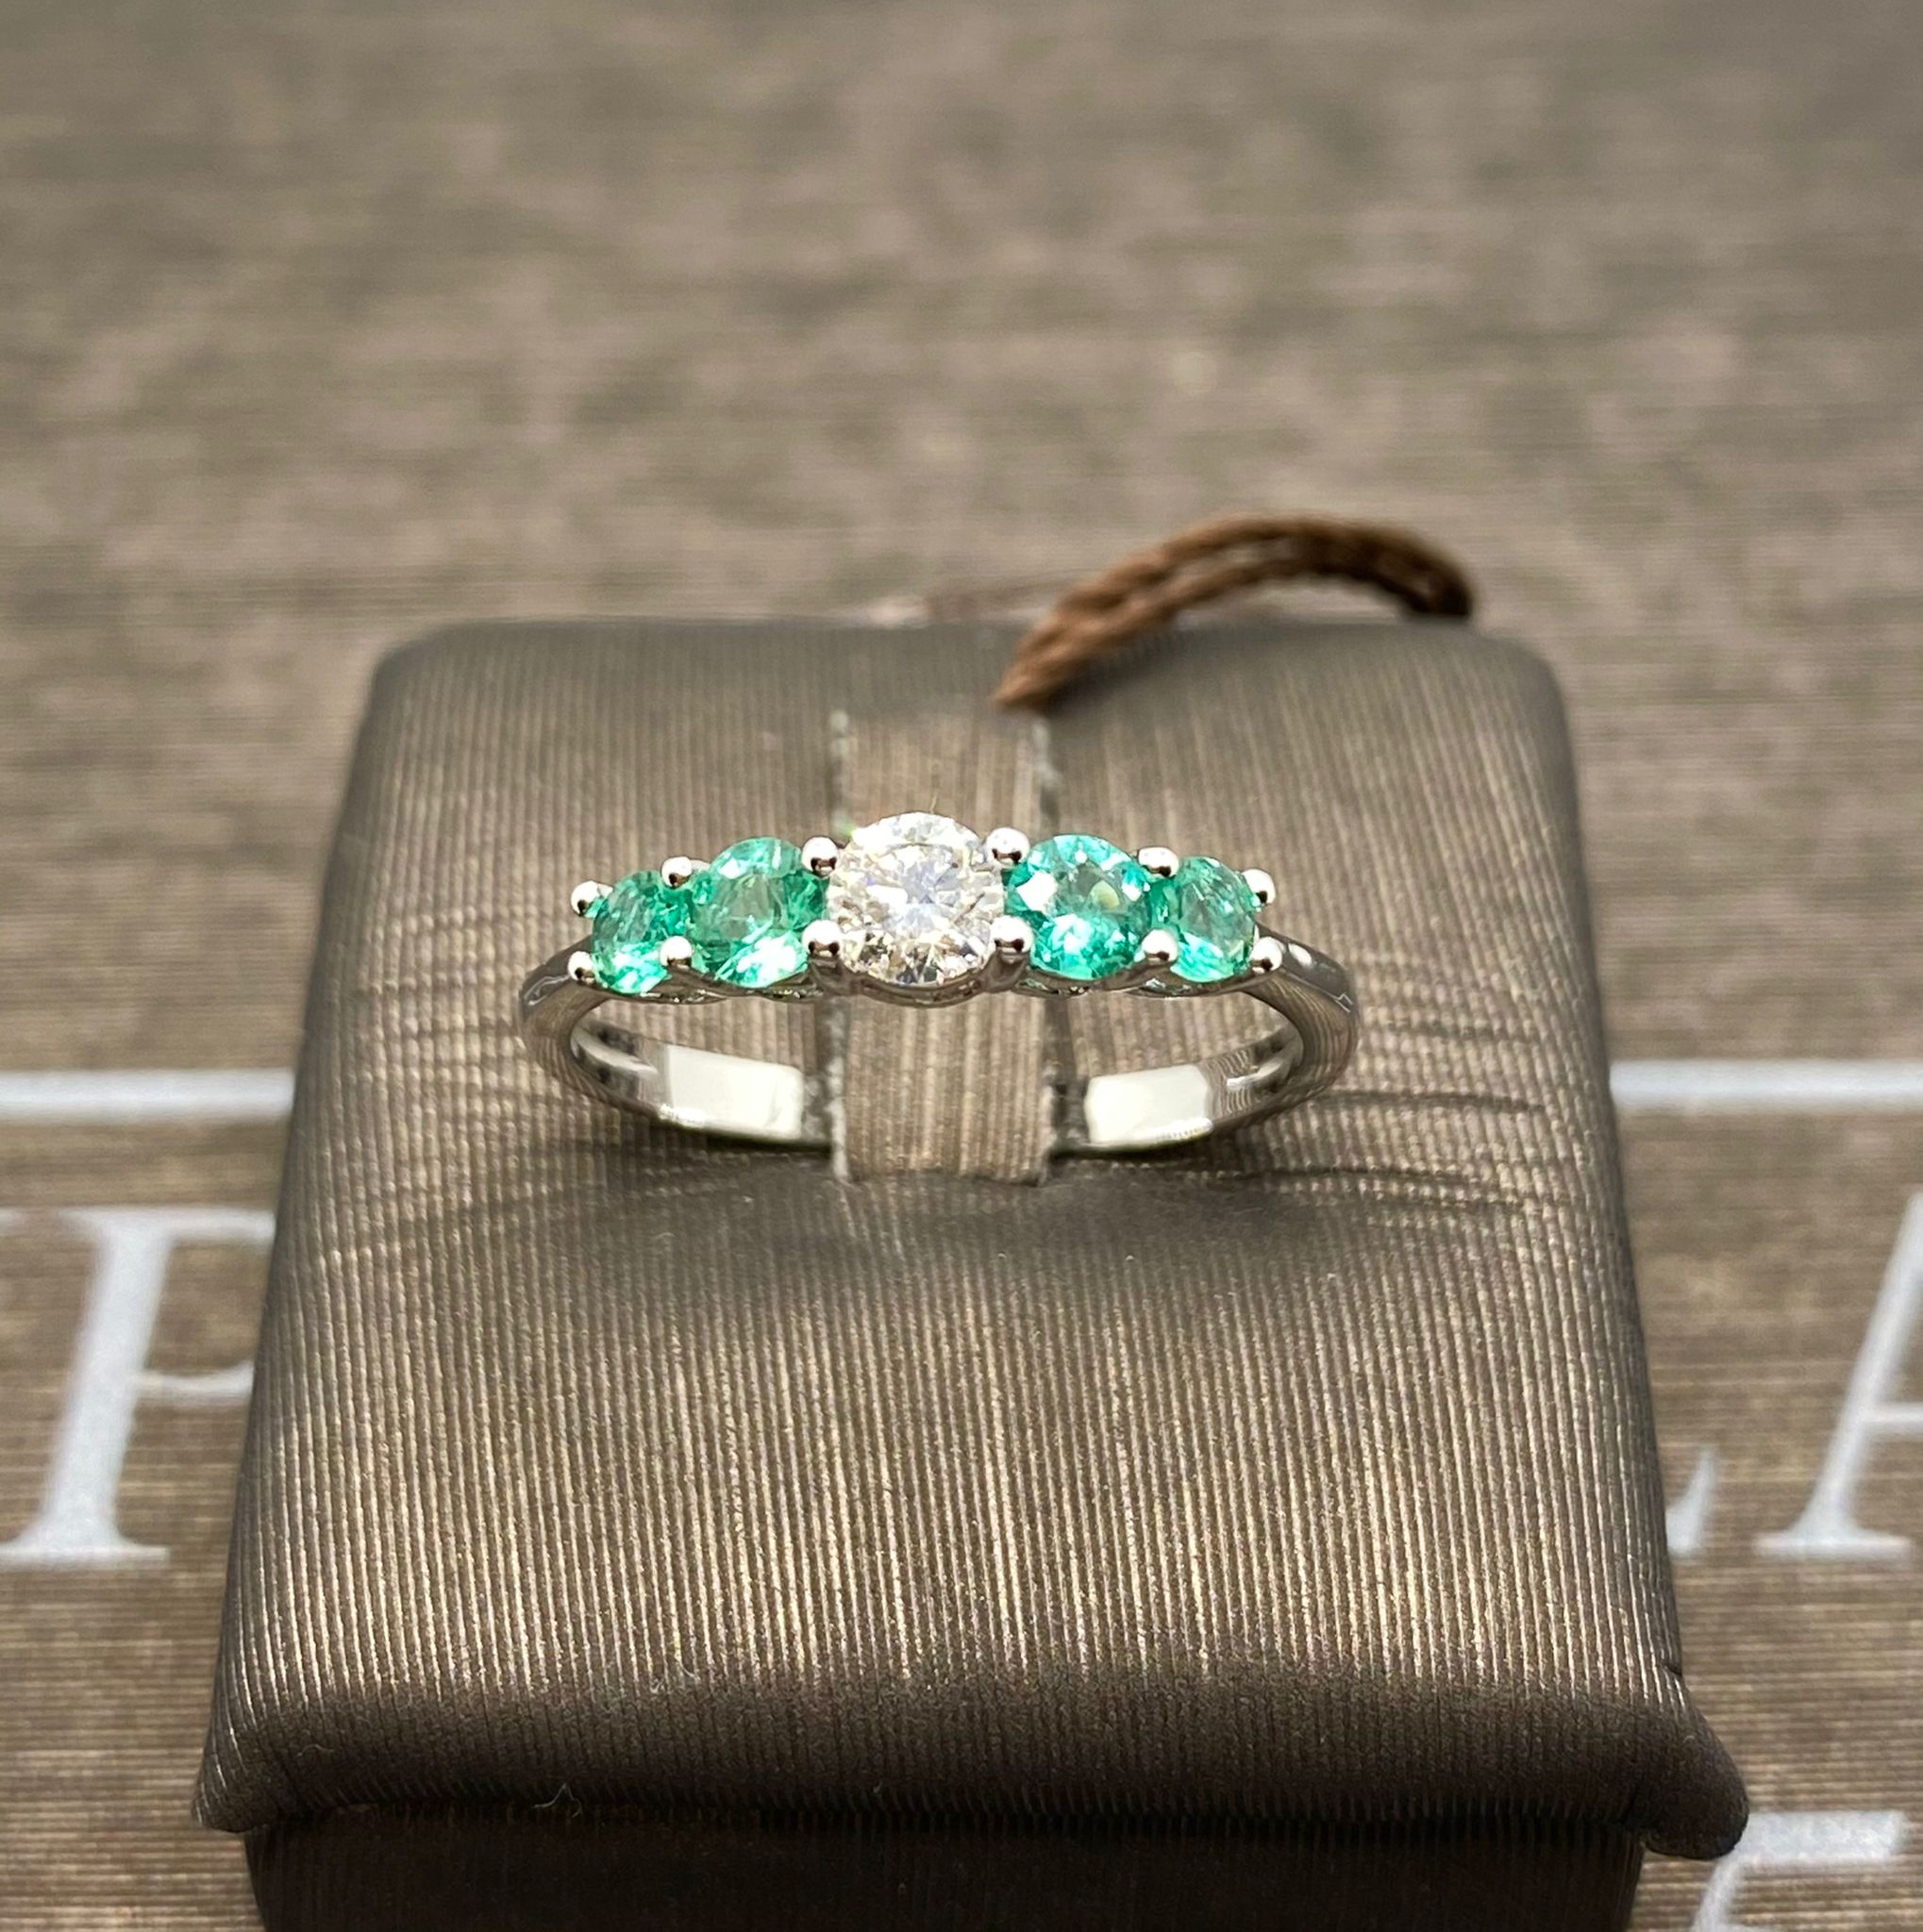 Veretta ring white gold 750% emeralds 0.35 ct diamonds 0.19 ct color F/VVs1